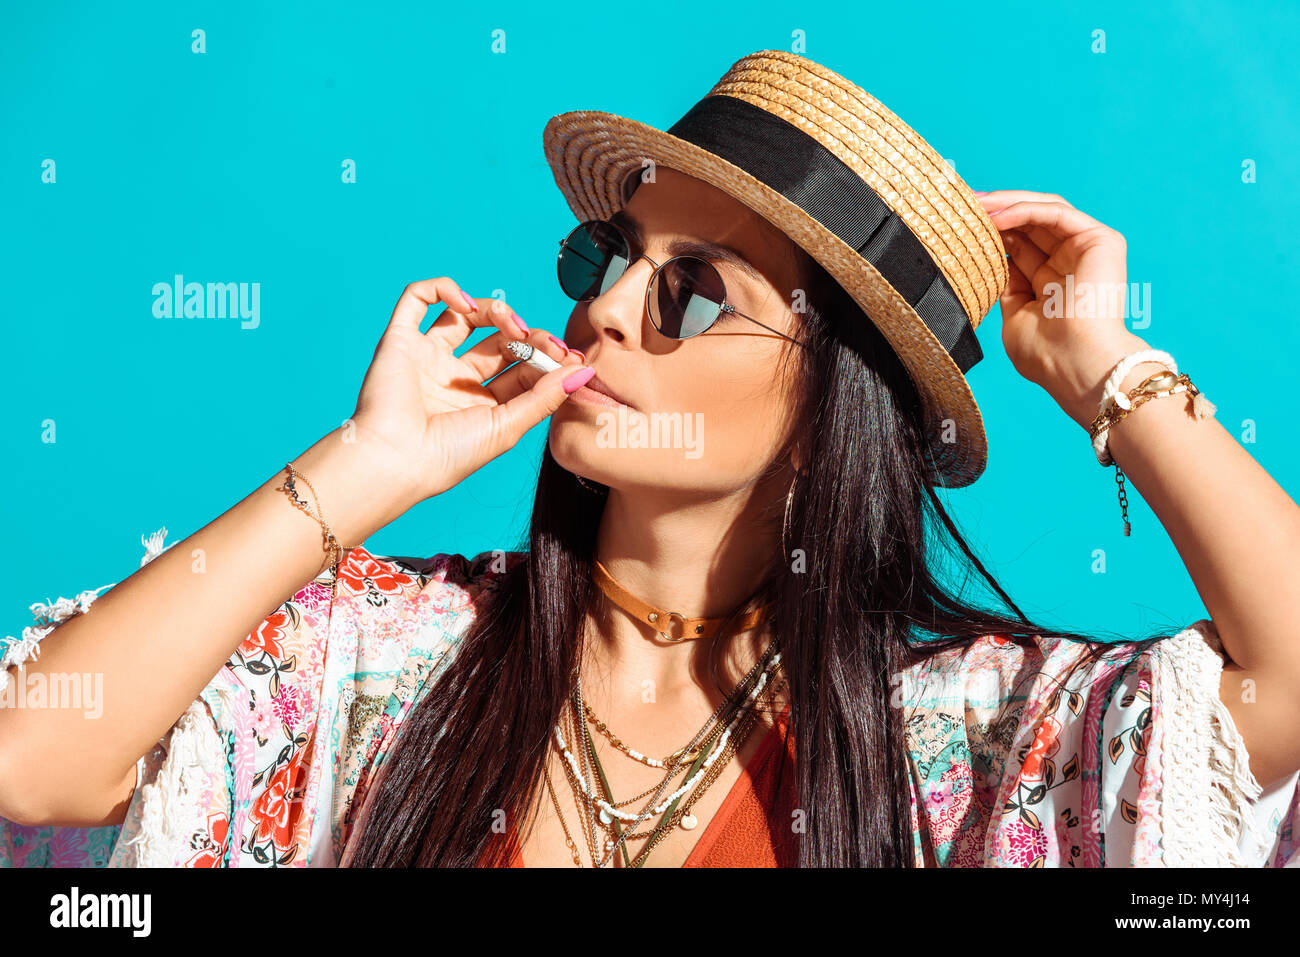 Attraente ragazza bohemien Sigaretta fumare isolato sul turchese Foto Stock